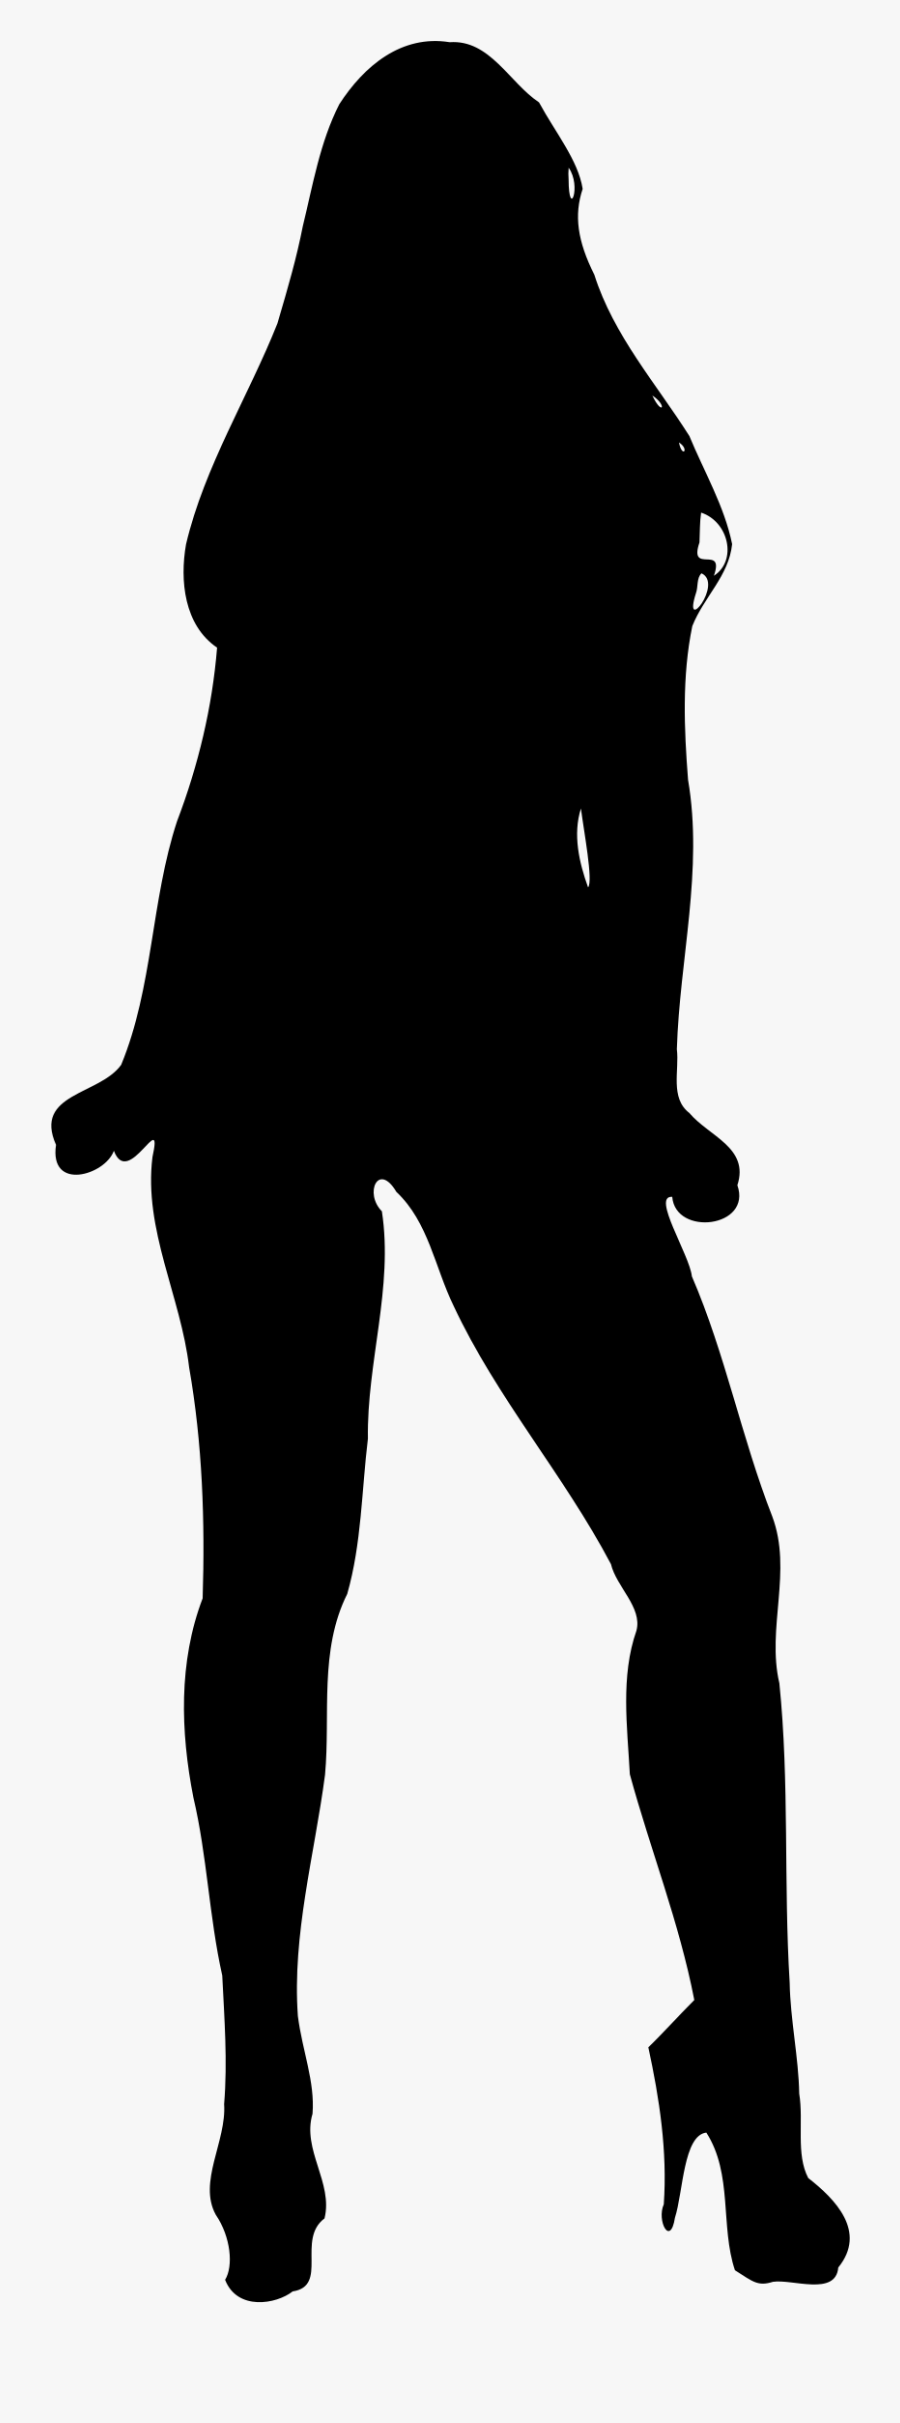 Pregnant Woman Silhouette Clip - Women Model Silhouette Png, Transparent Clipart